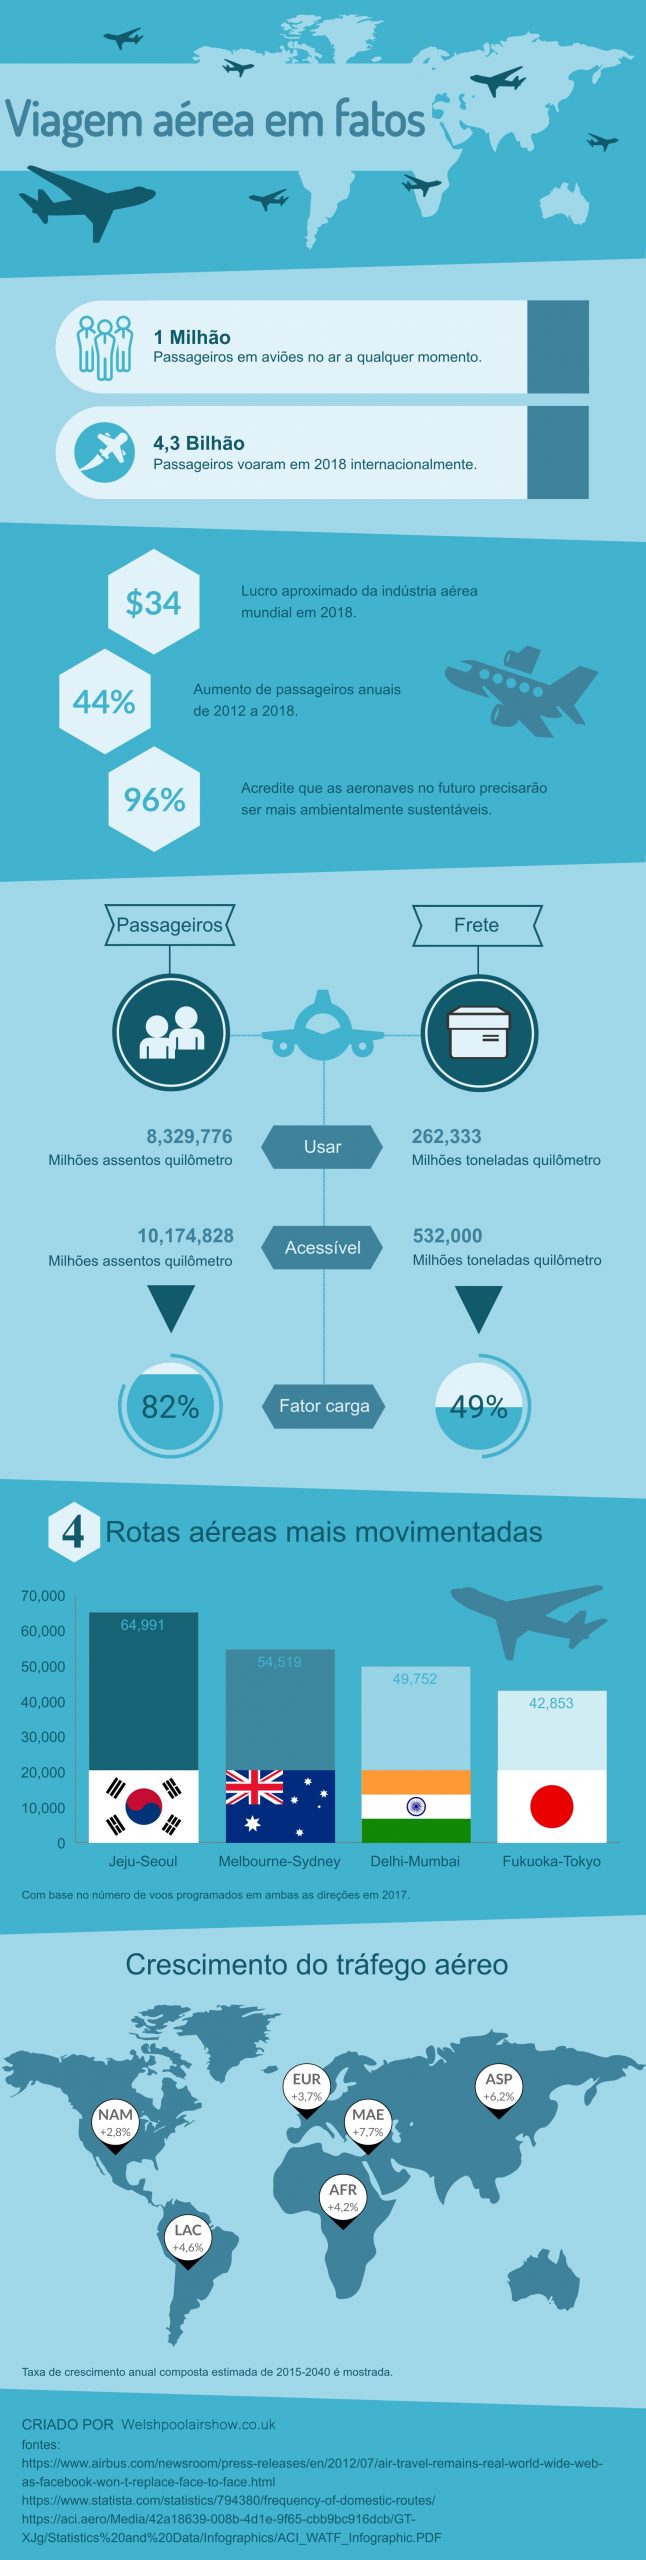 Viagem aerea em fatos infografico